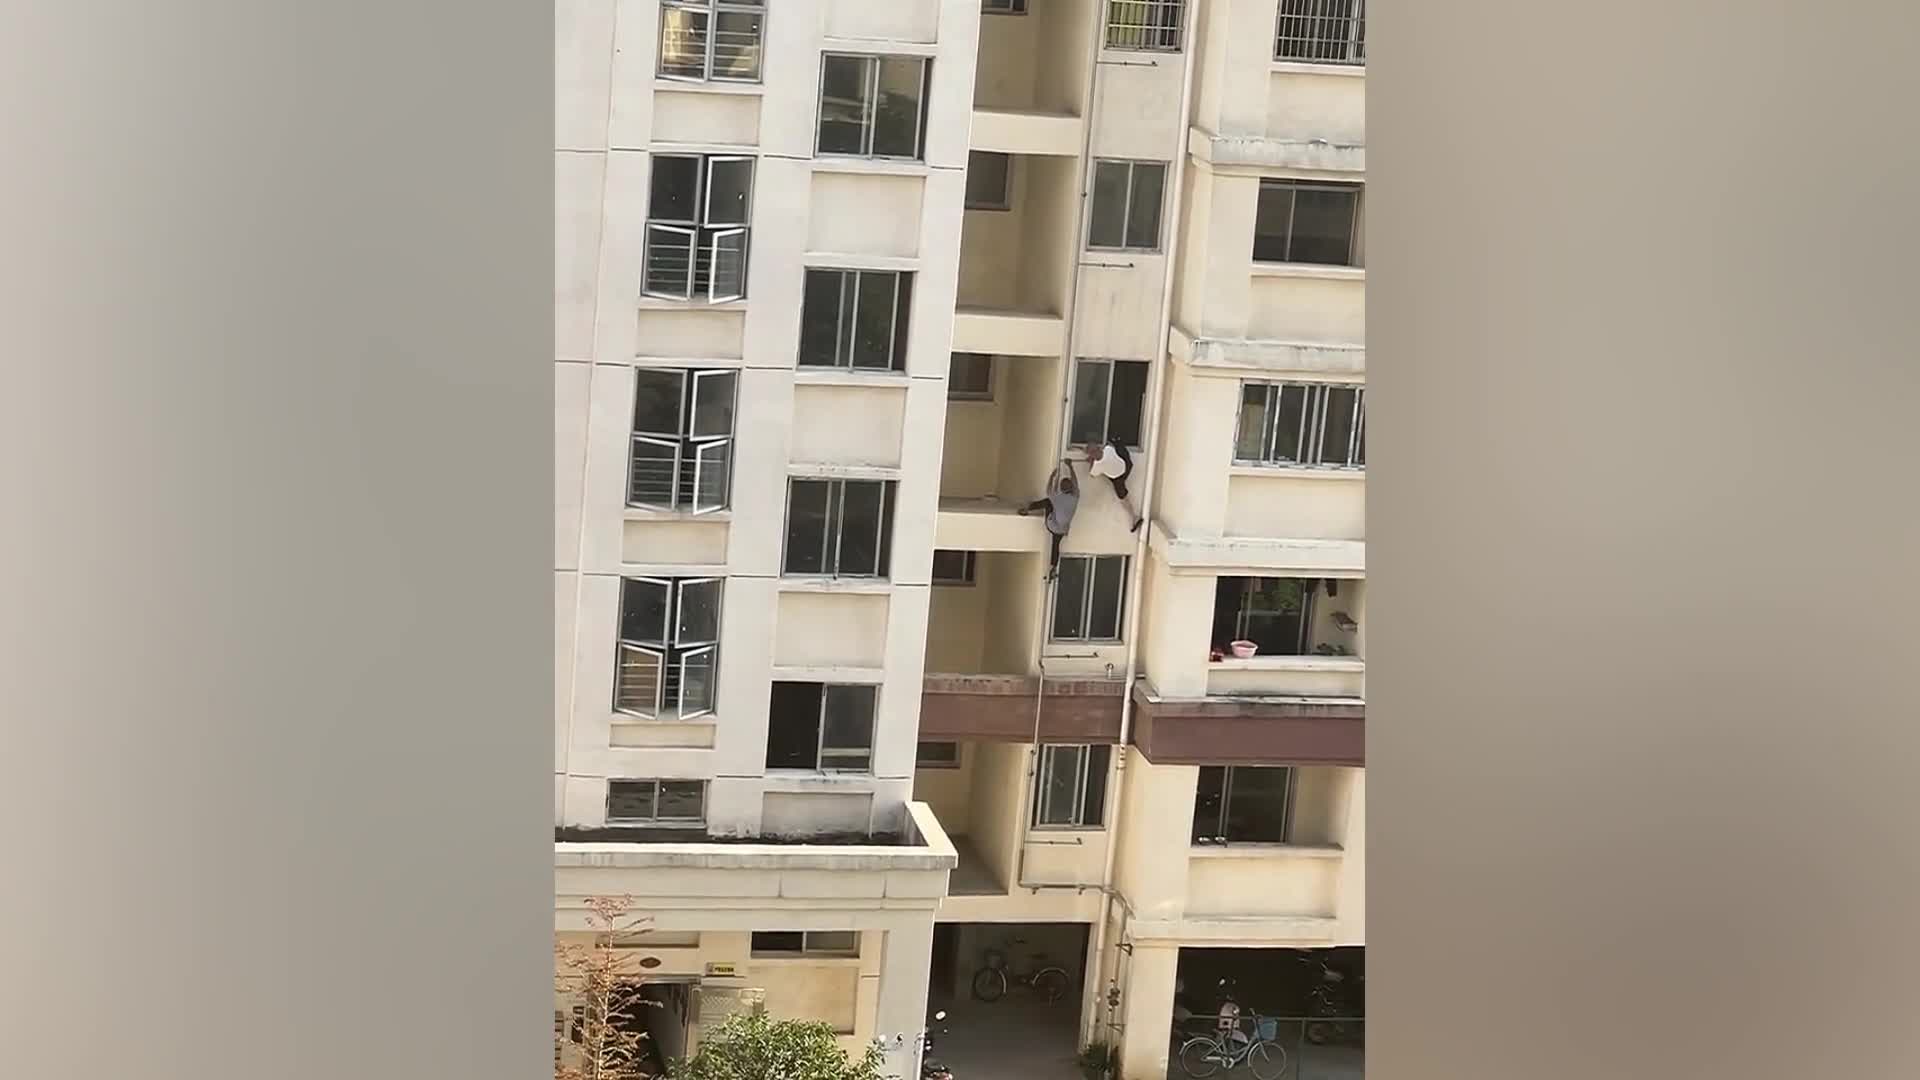 Video - Clip: Hành động bất ngờ của người đàn ông khiếm thính cứu cụ già thoát nạn từ tầng 4 tòa nhà 